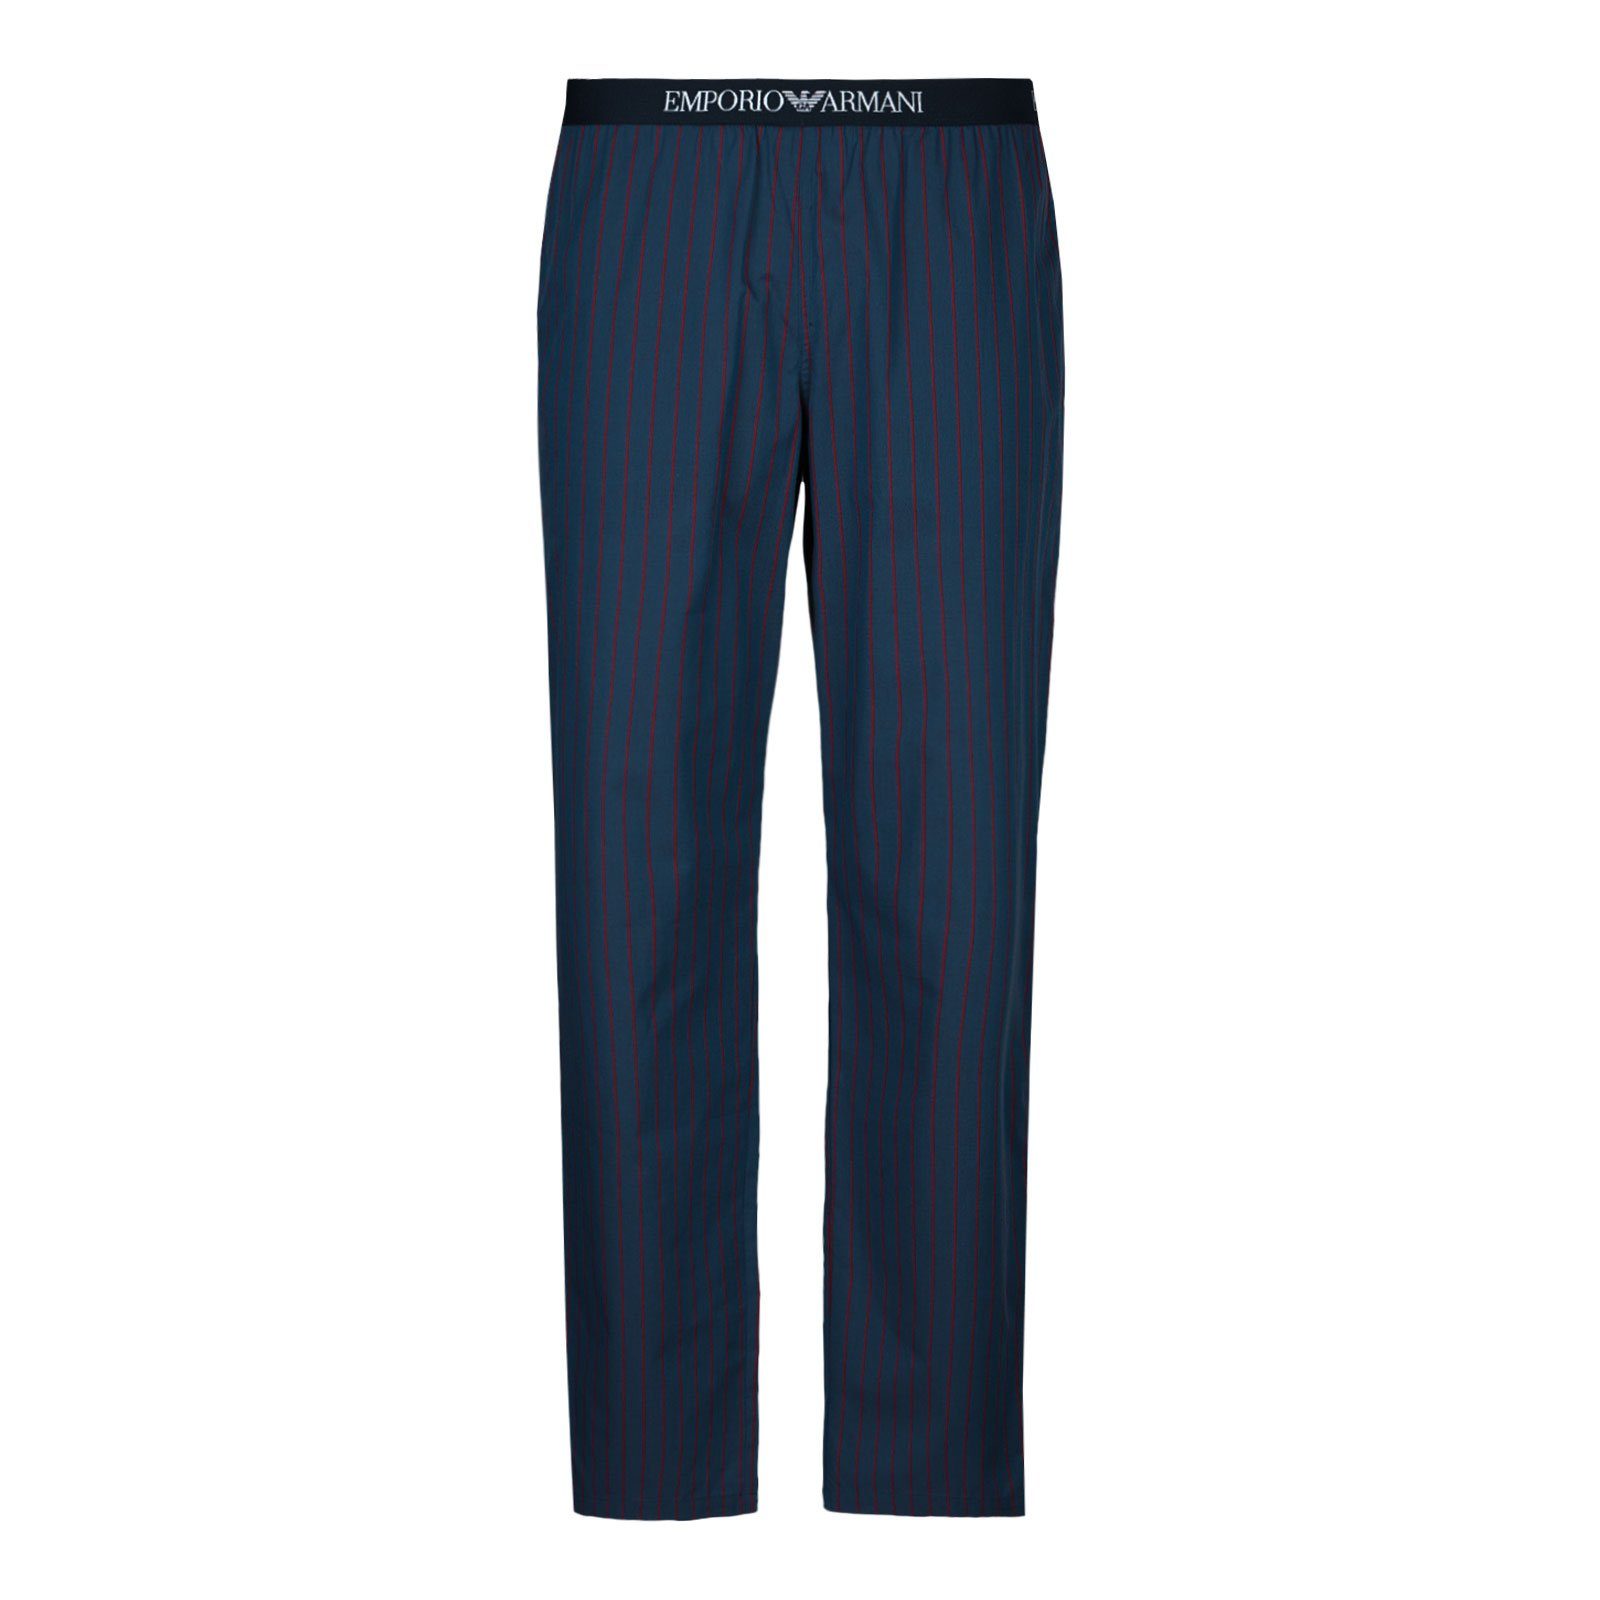 Emporio Armani Pyjamahose Homewear Trousers mit umlaufenden Markenschriftzug auf dem Bund 23534 blue / poppy